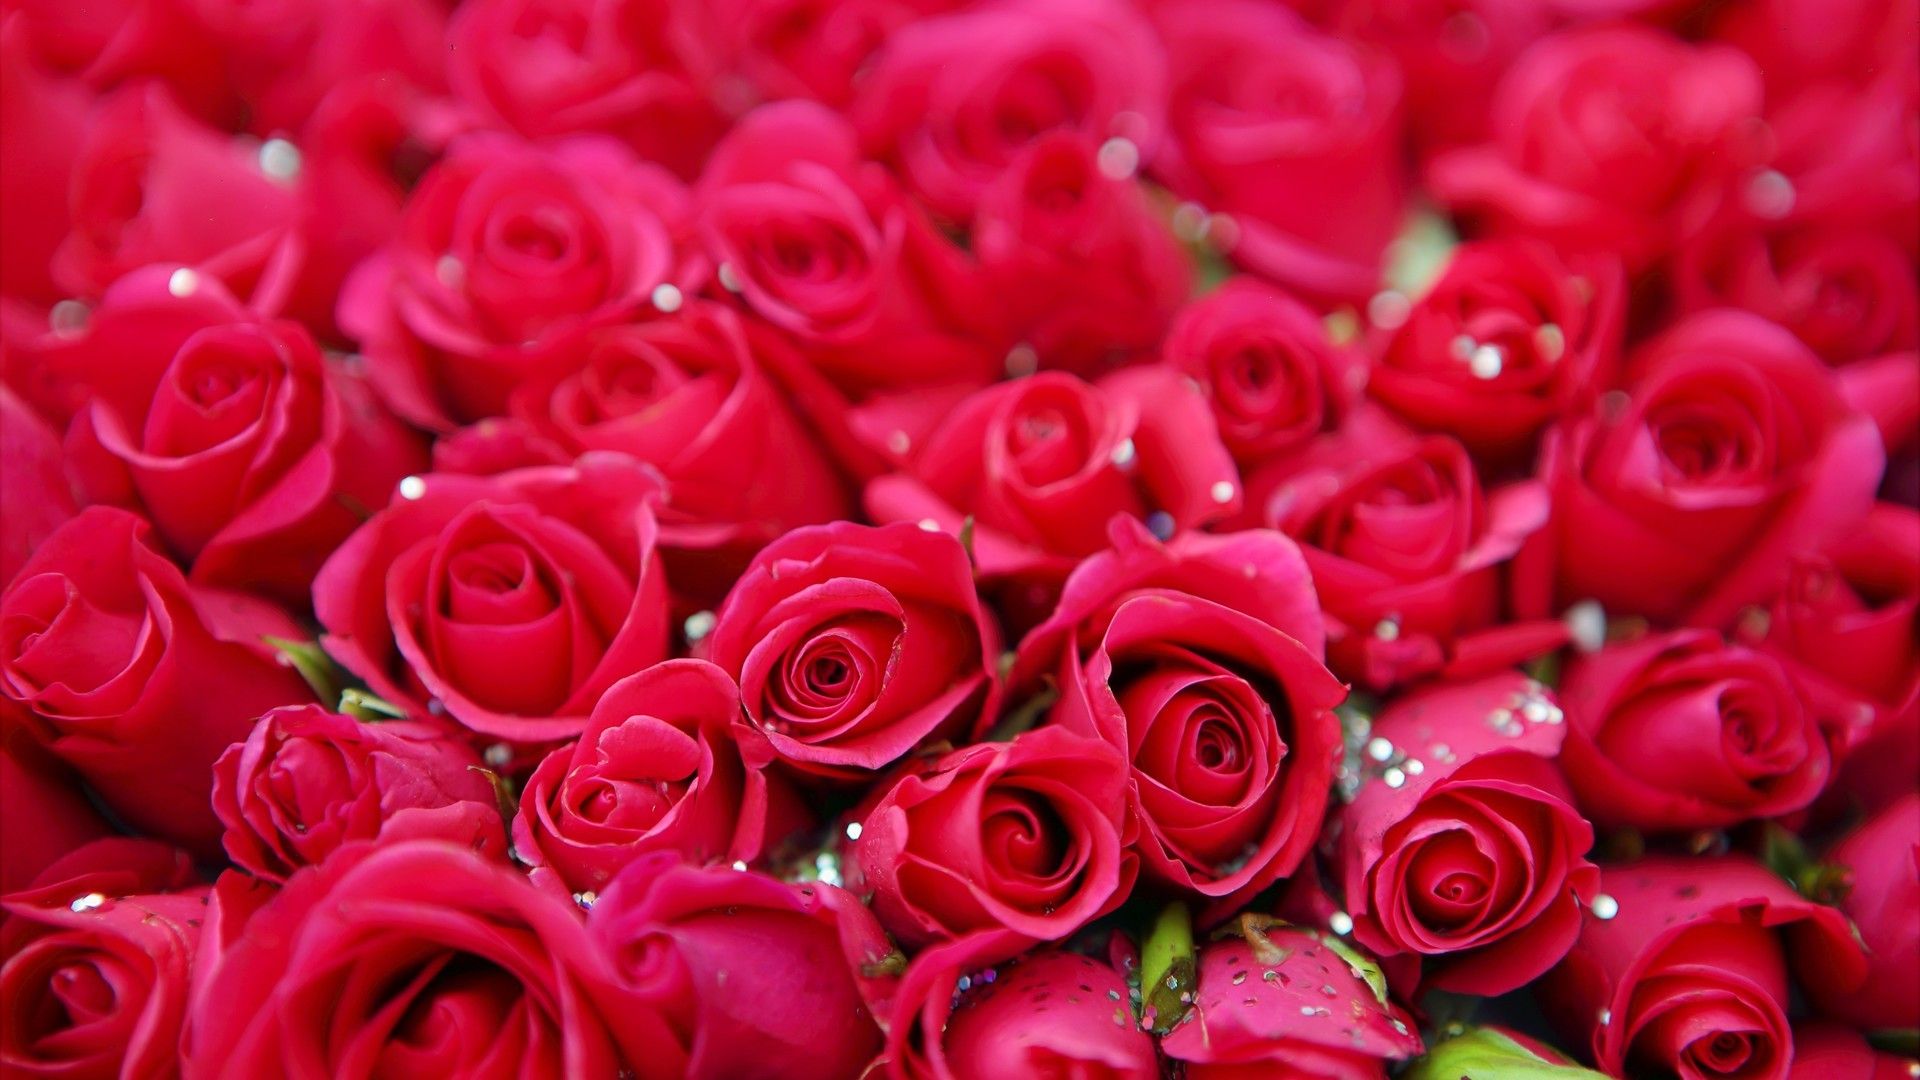 象征彼此爱情的娇艳玫瑰花系列桌面图片壁纸